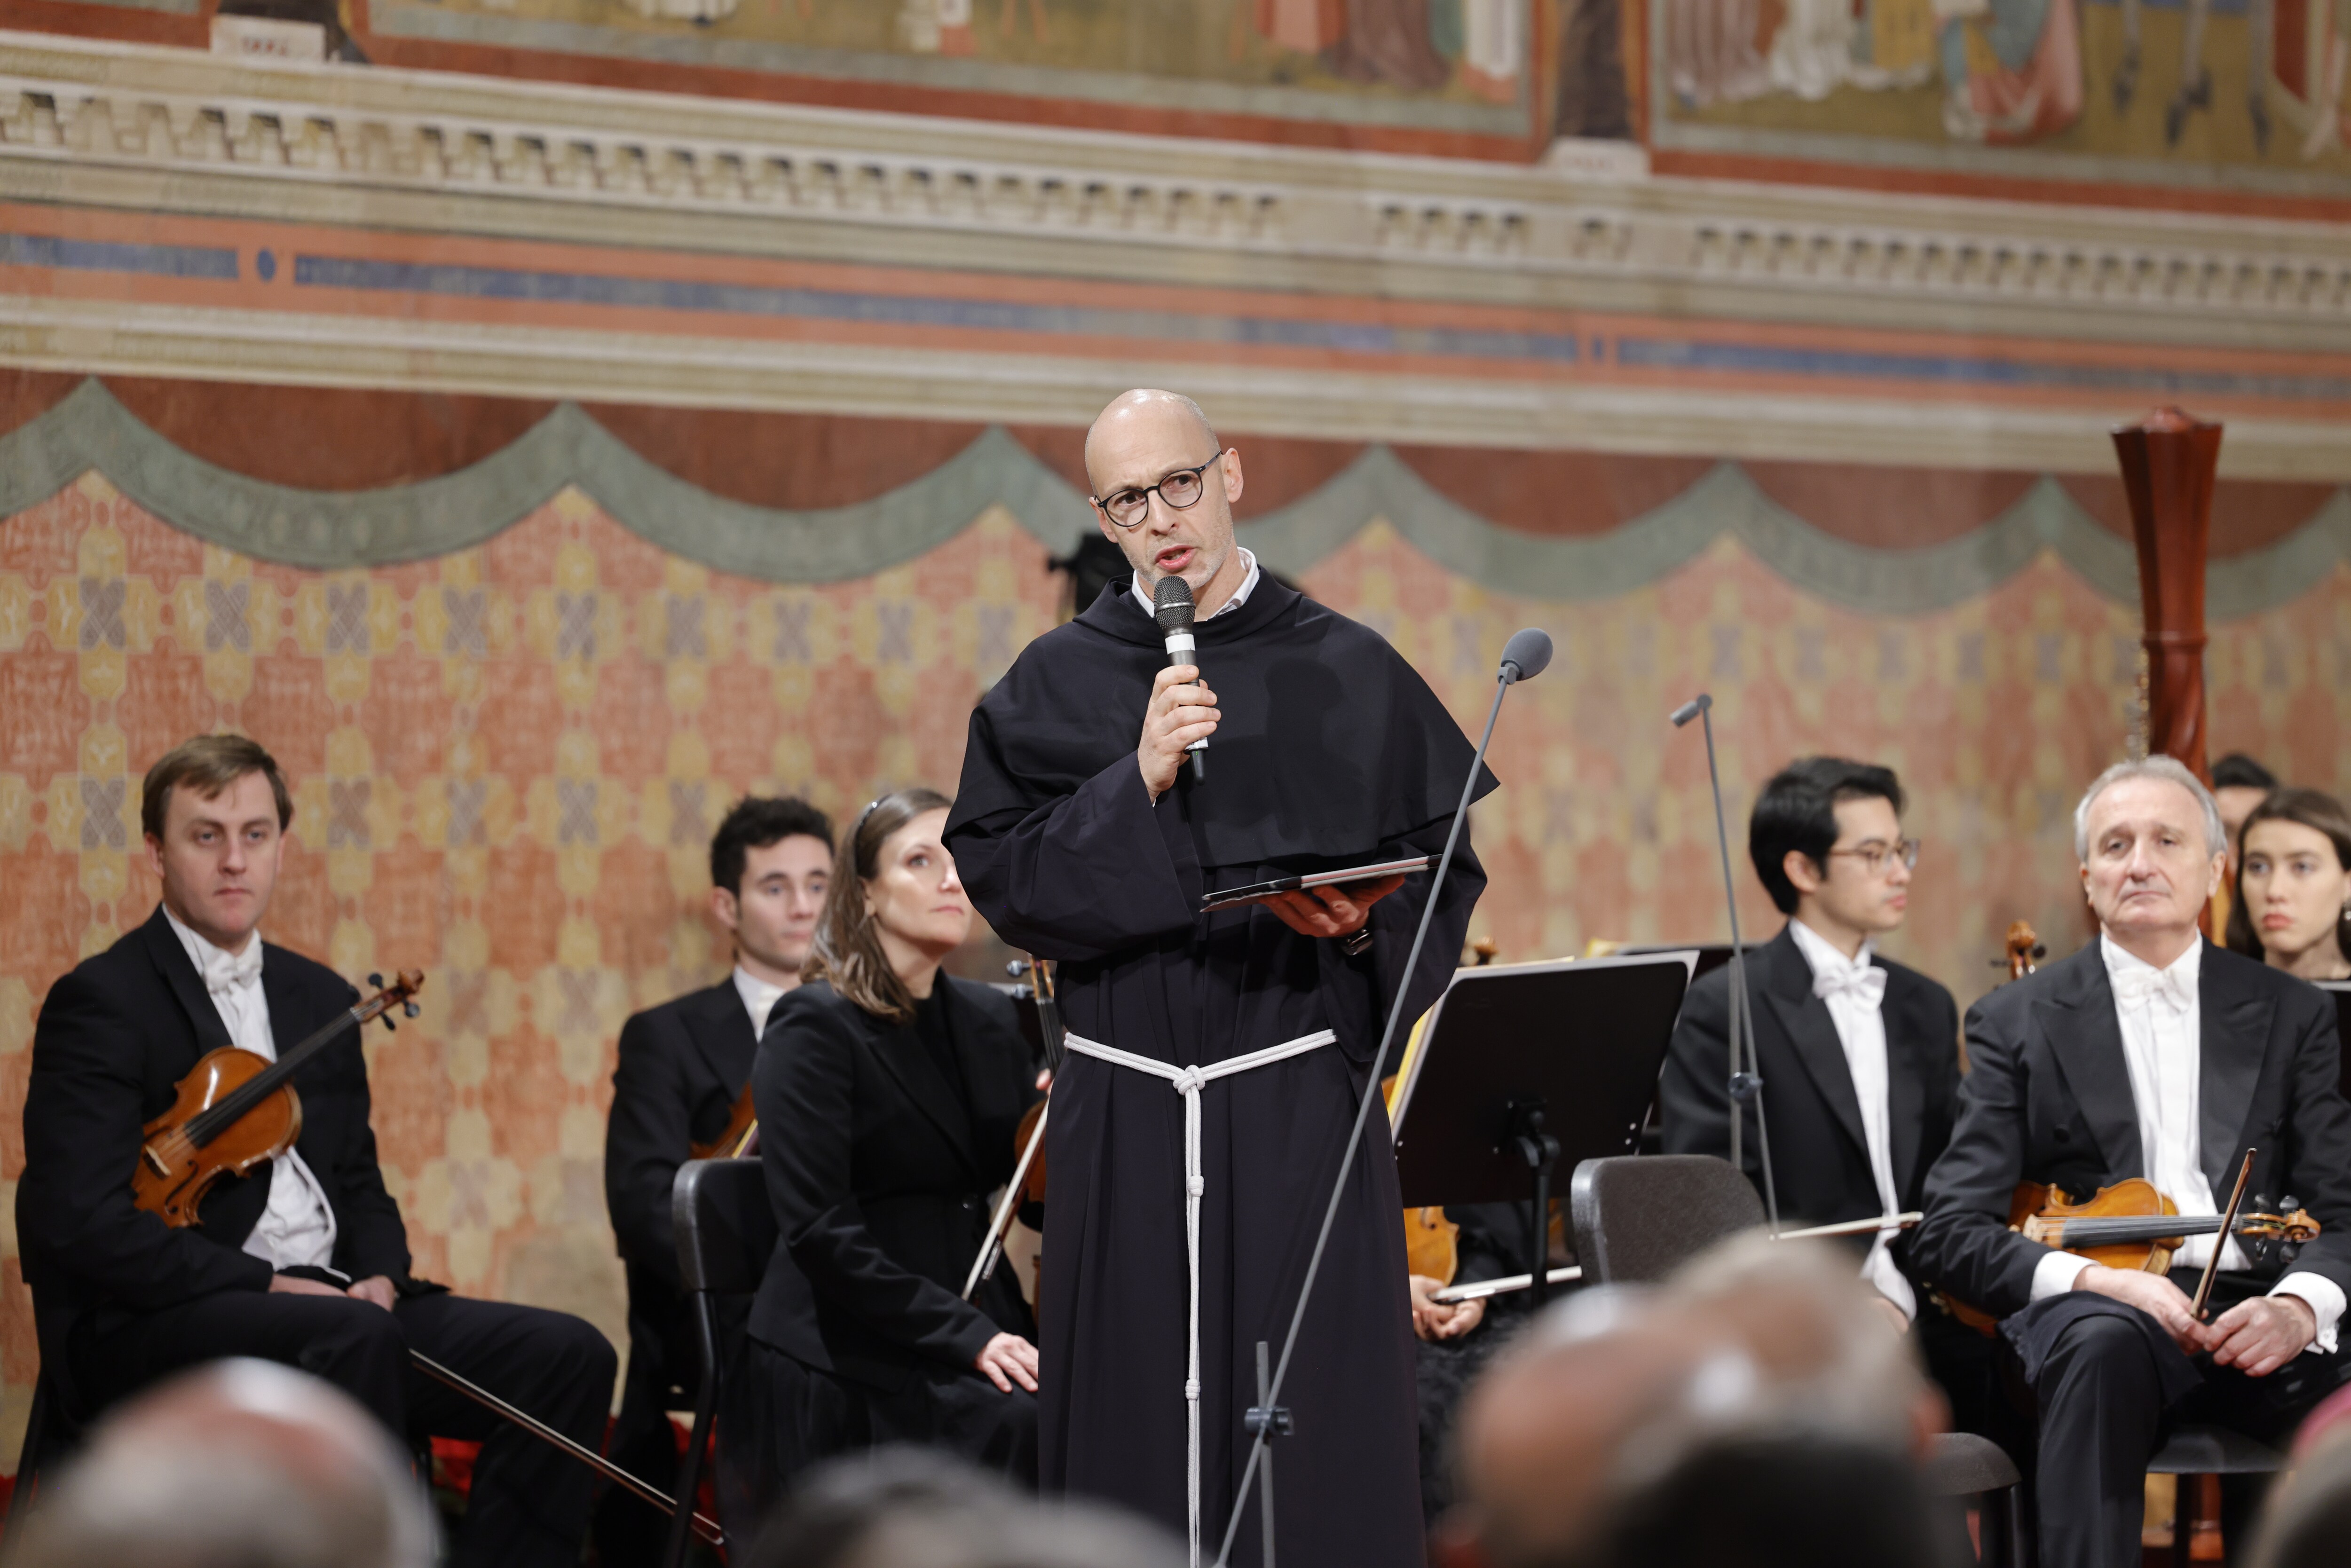 Le foto del concerto di Assisi